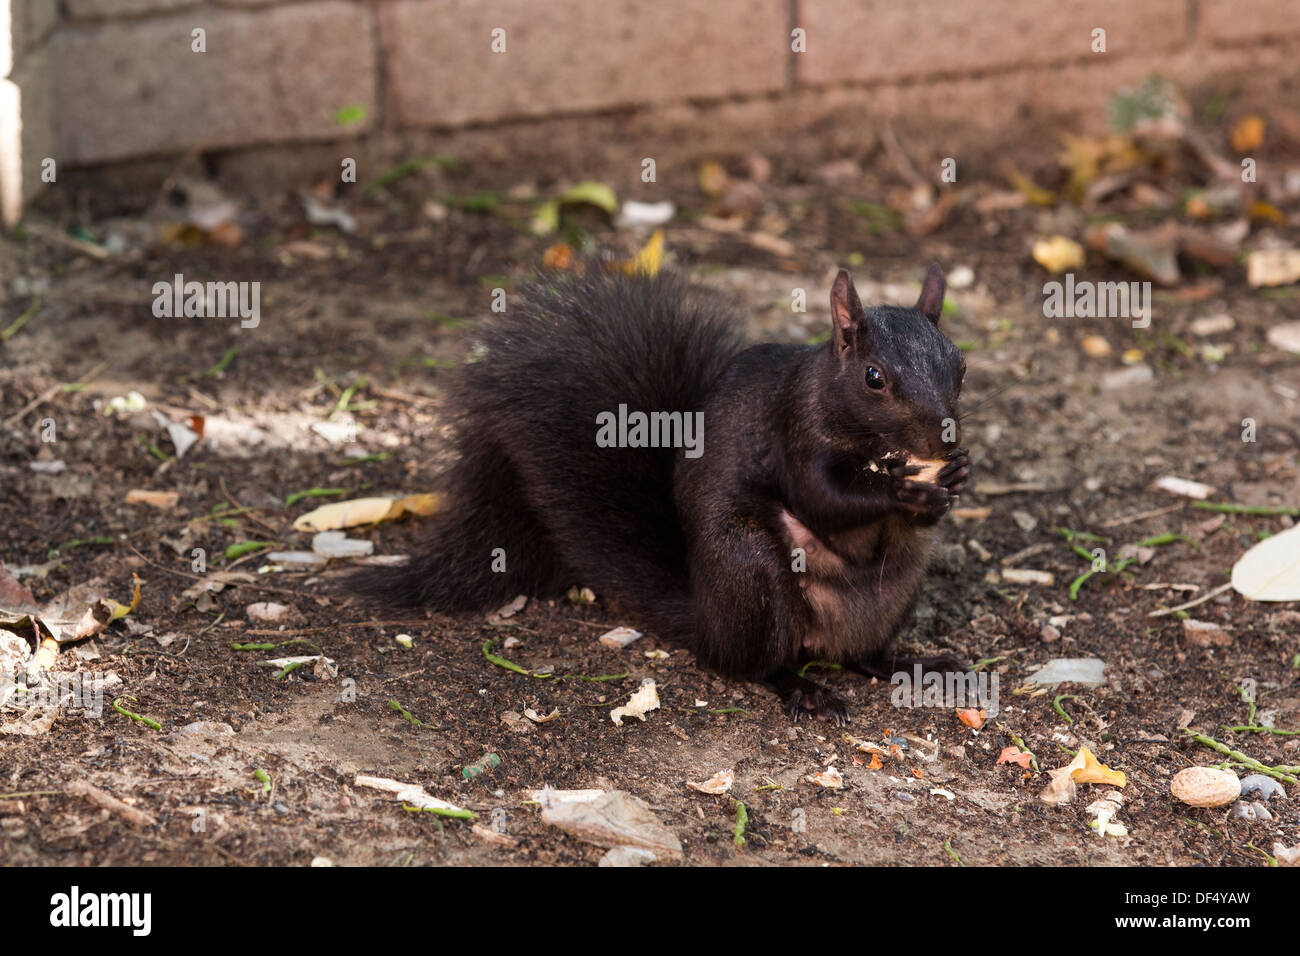 Les femmes enceintes de manger de l'écureuil noir en arachide Berczy Park dans le centre-ville de Toronto Banque D'Images